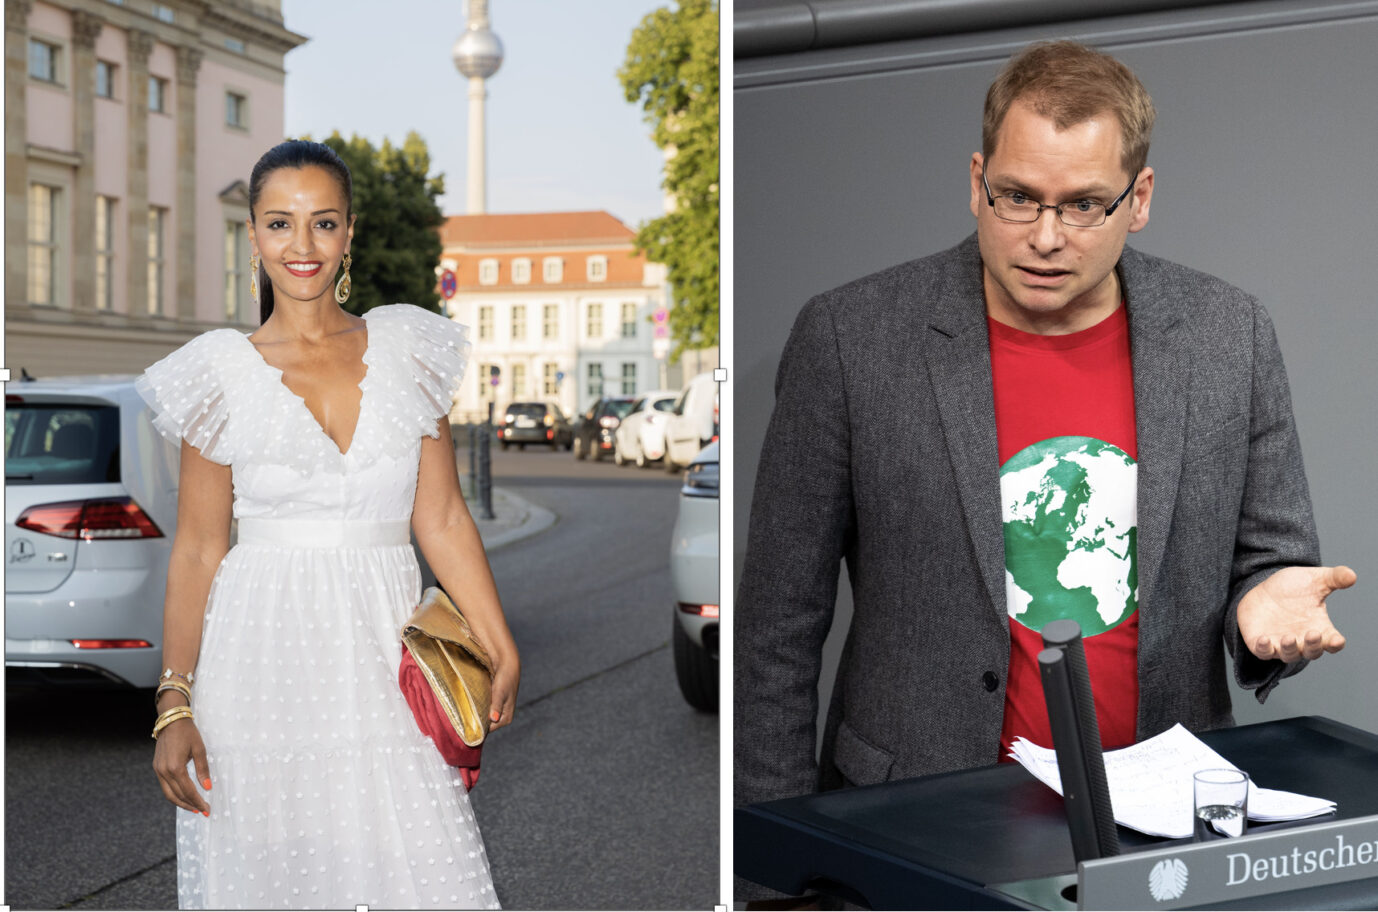 Sawsan Chebli und Lorenz Beutin sehen "Rassismus" als Ursache der Wahlergebnisse in Berlin.